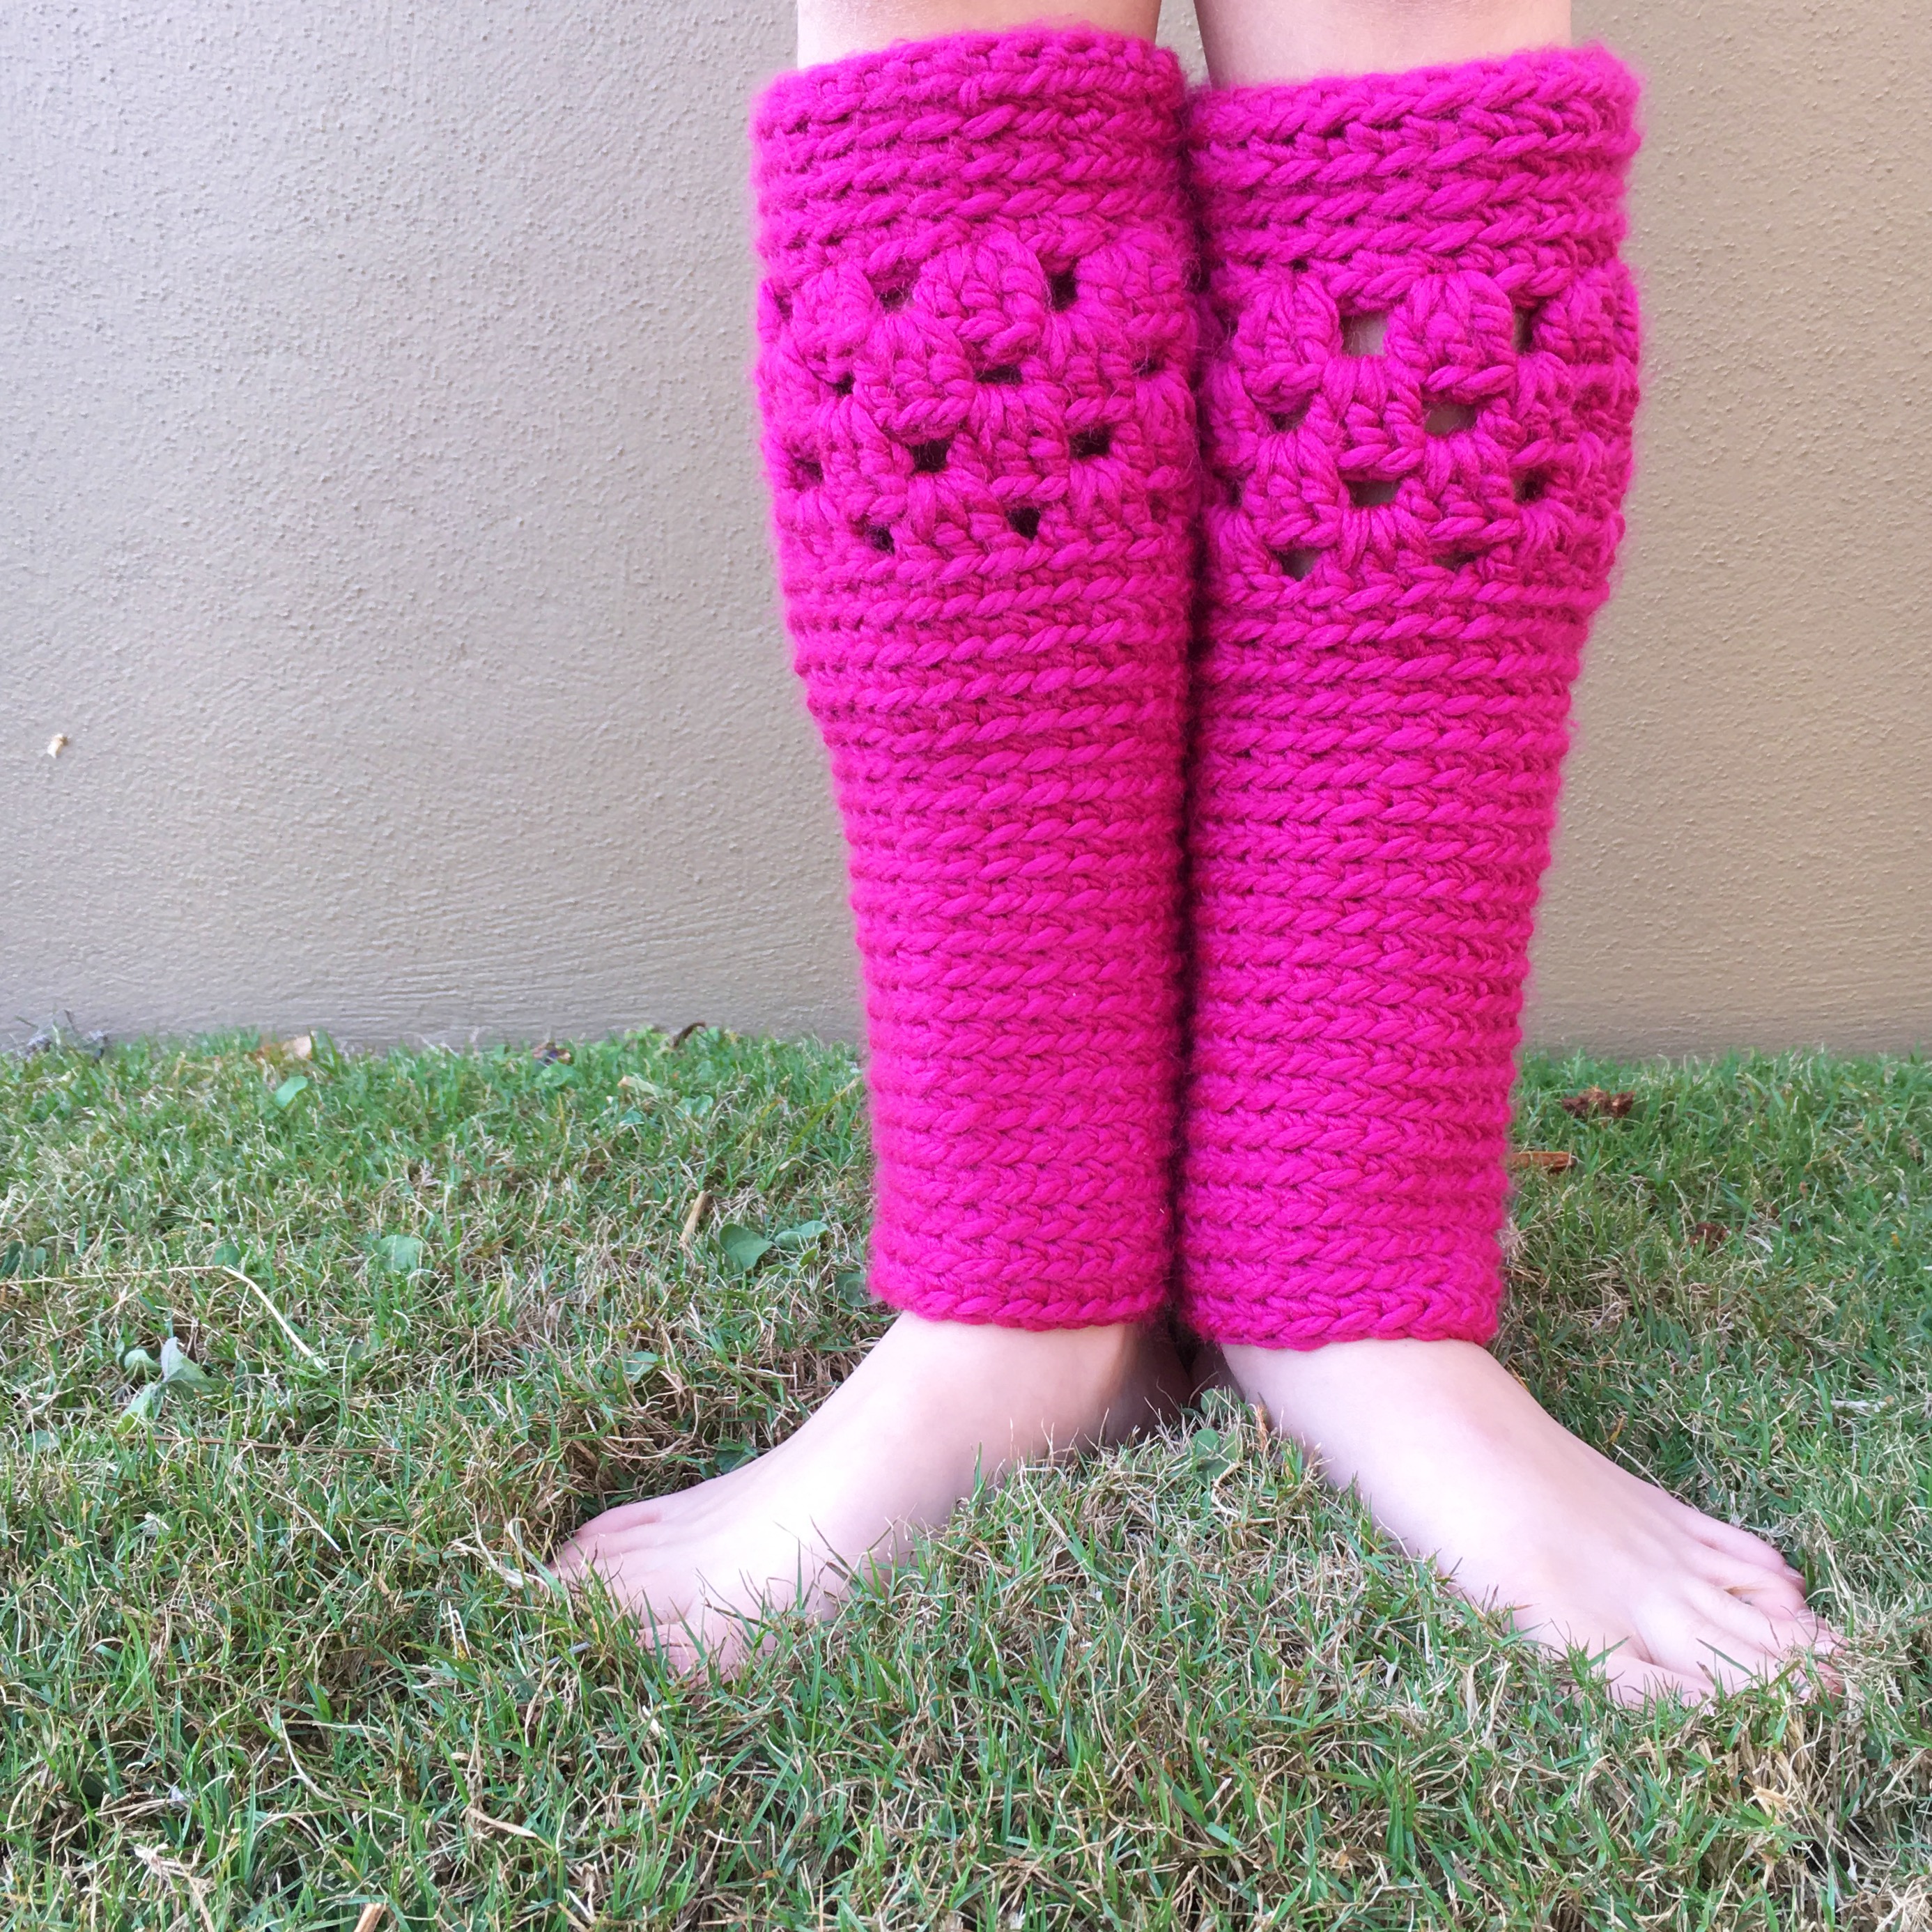 Tutorial: Crochet Leg Warmers